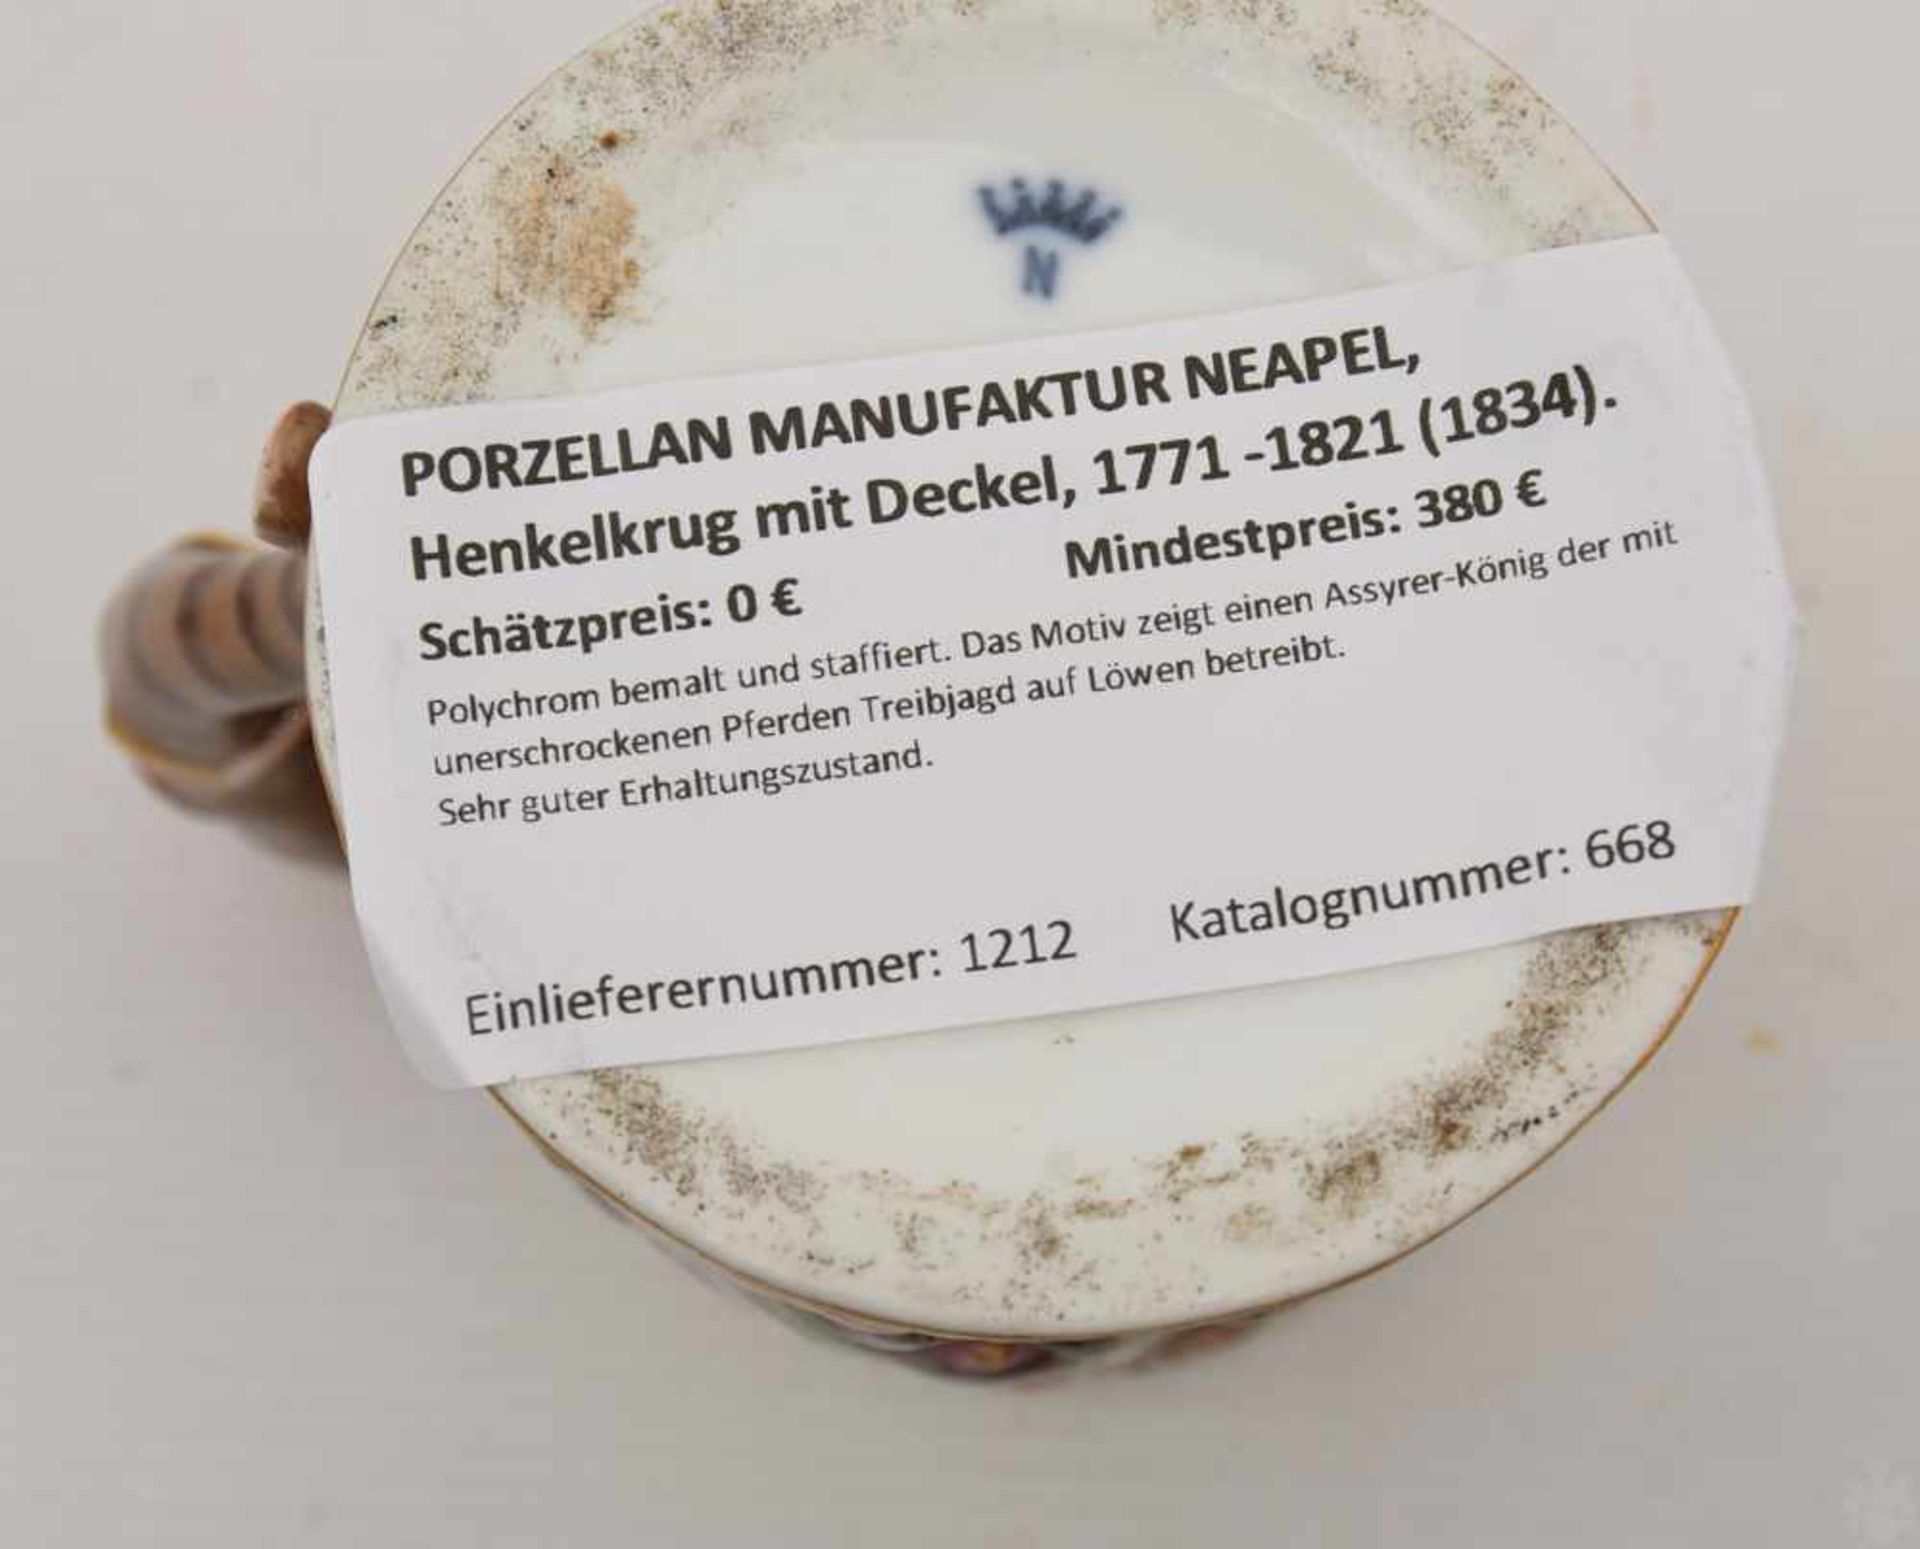 PORZELLAN MANUFAKTUR NEAPEL, Henkelkrug mit Deckel, 1771 -1821 (1834).Polychrom bemalt und - Bild 7 aus 7